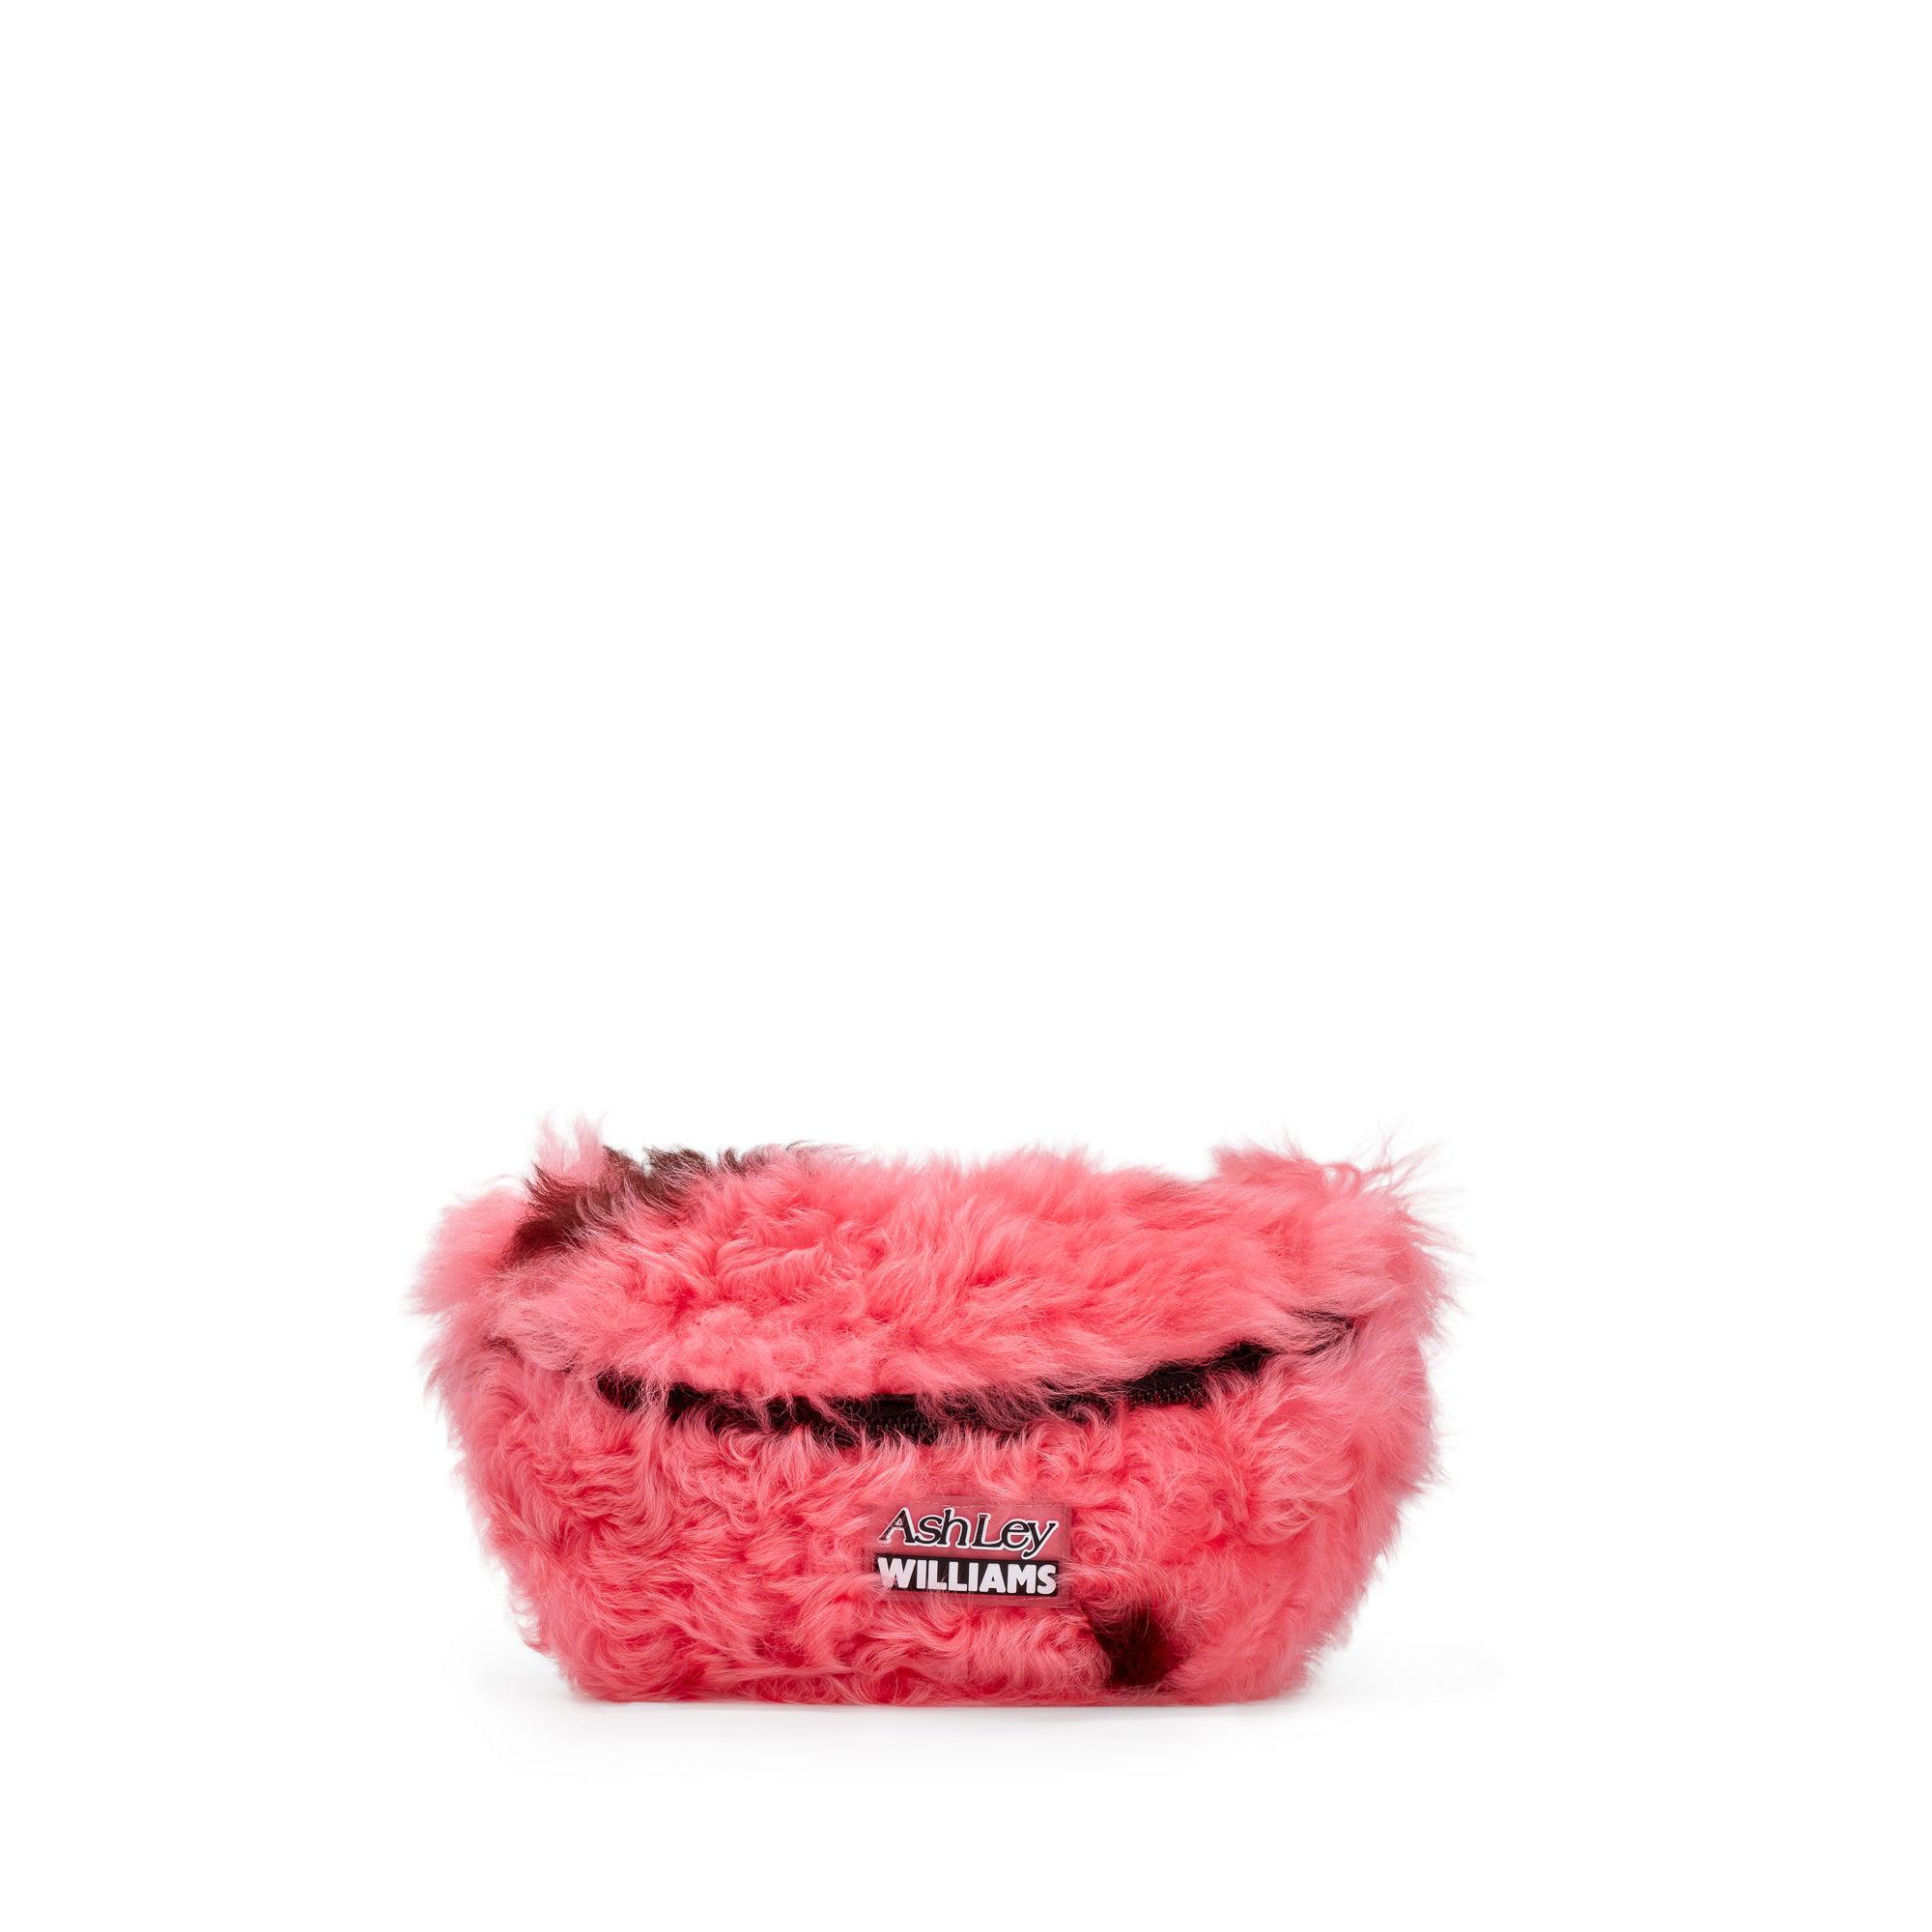 Ashley Williams Shearling Bum Bag (Pink) by ASHLEY WILLIAMS